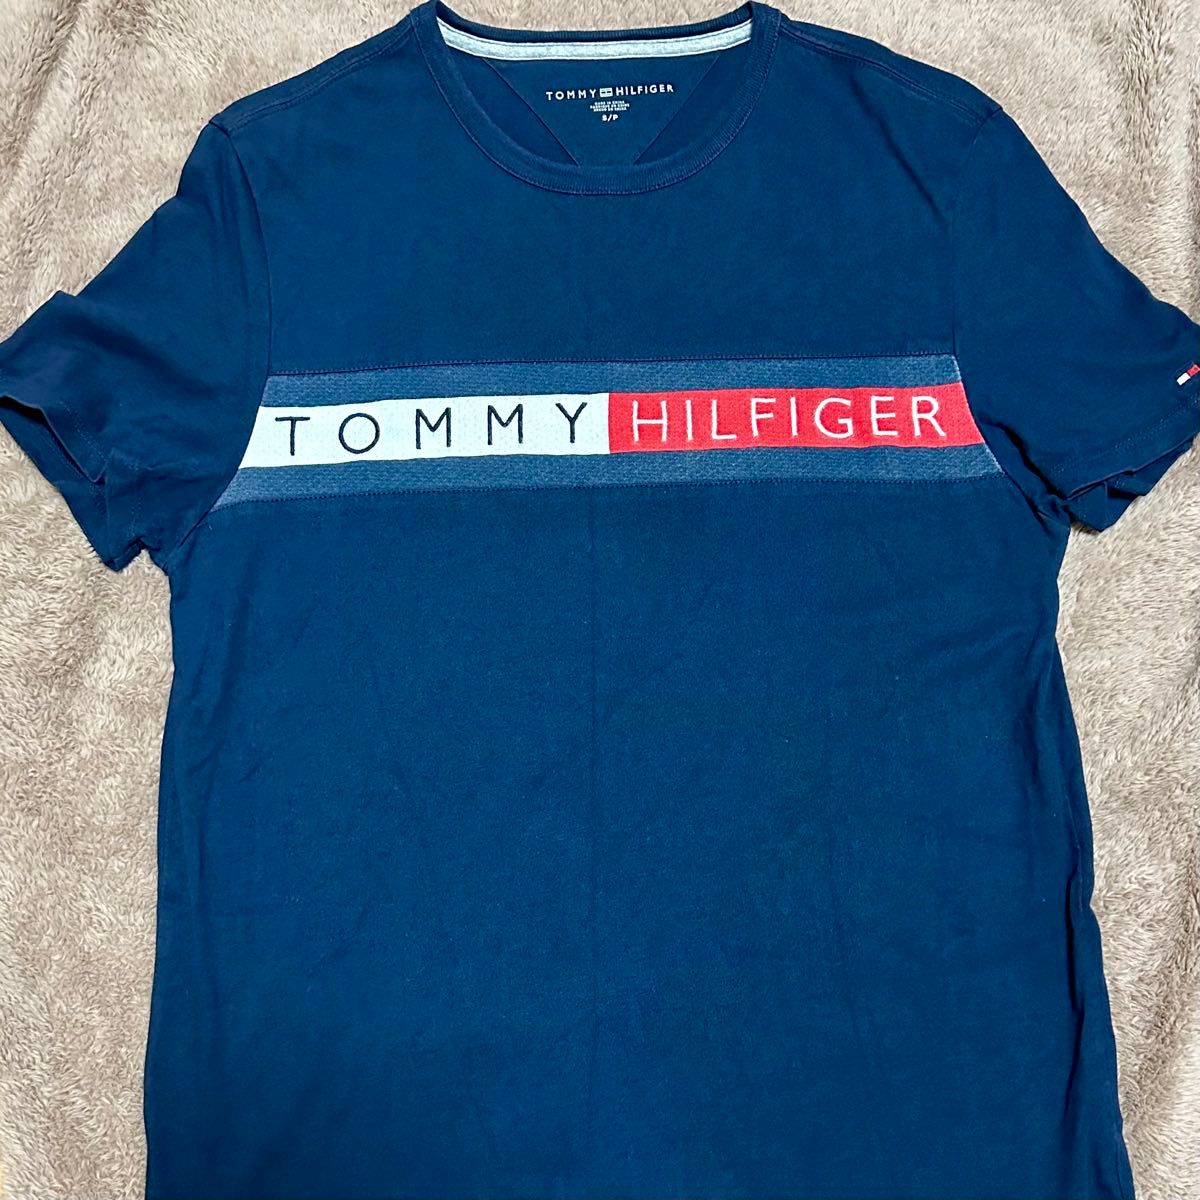 【美品♪】TOMMY HILFIGER メンズ 半袖Tシャツ Sサイズ 紺色 ネイビー Uネック 古着 お洒落 